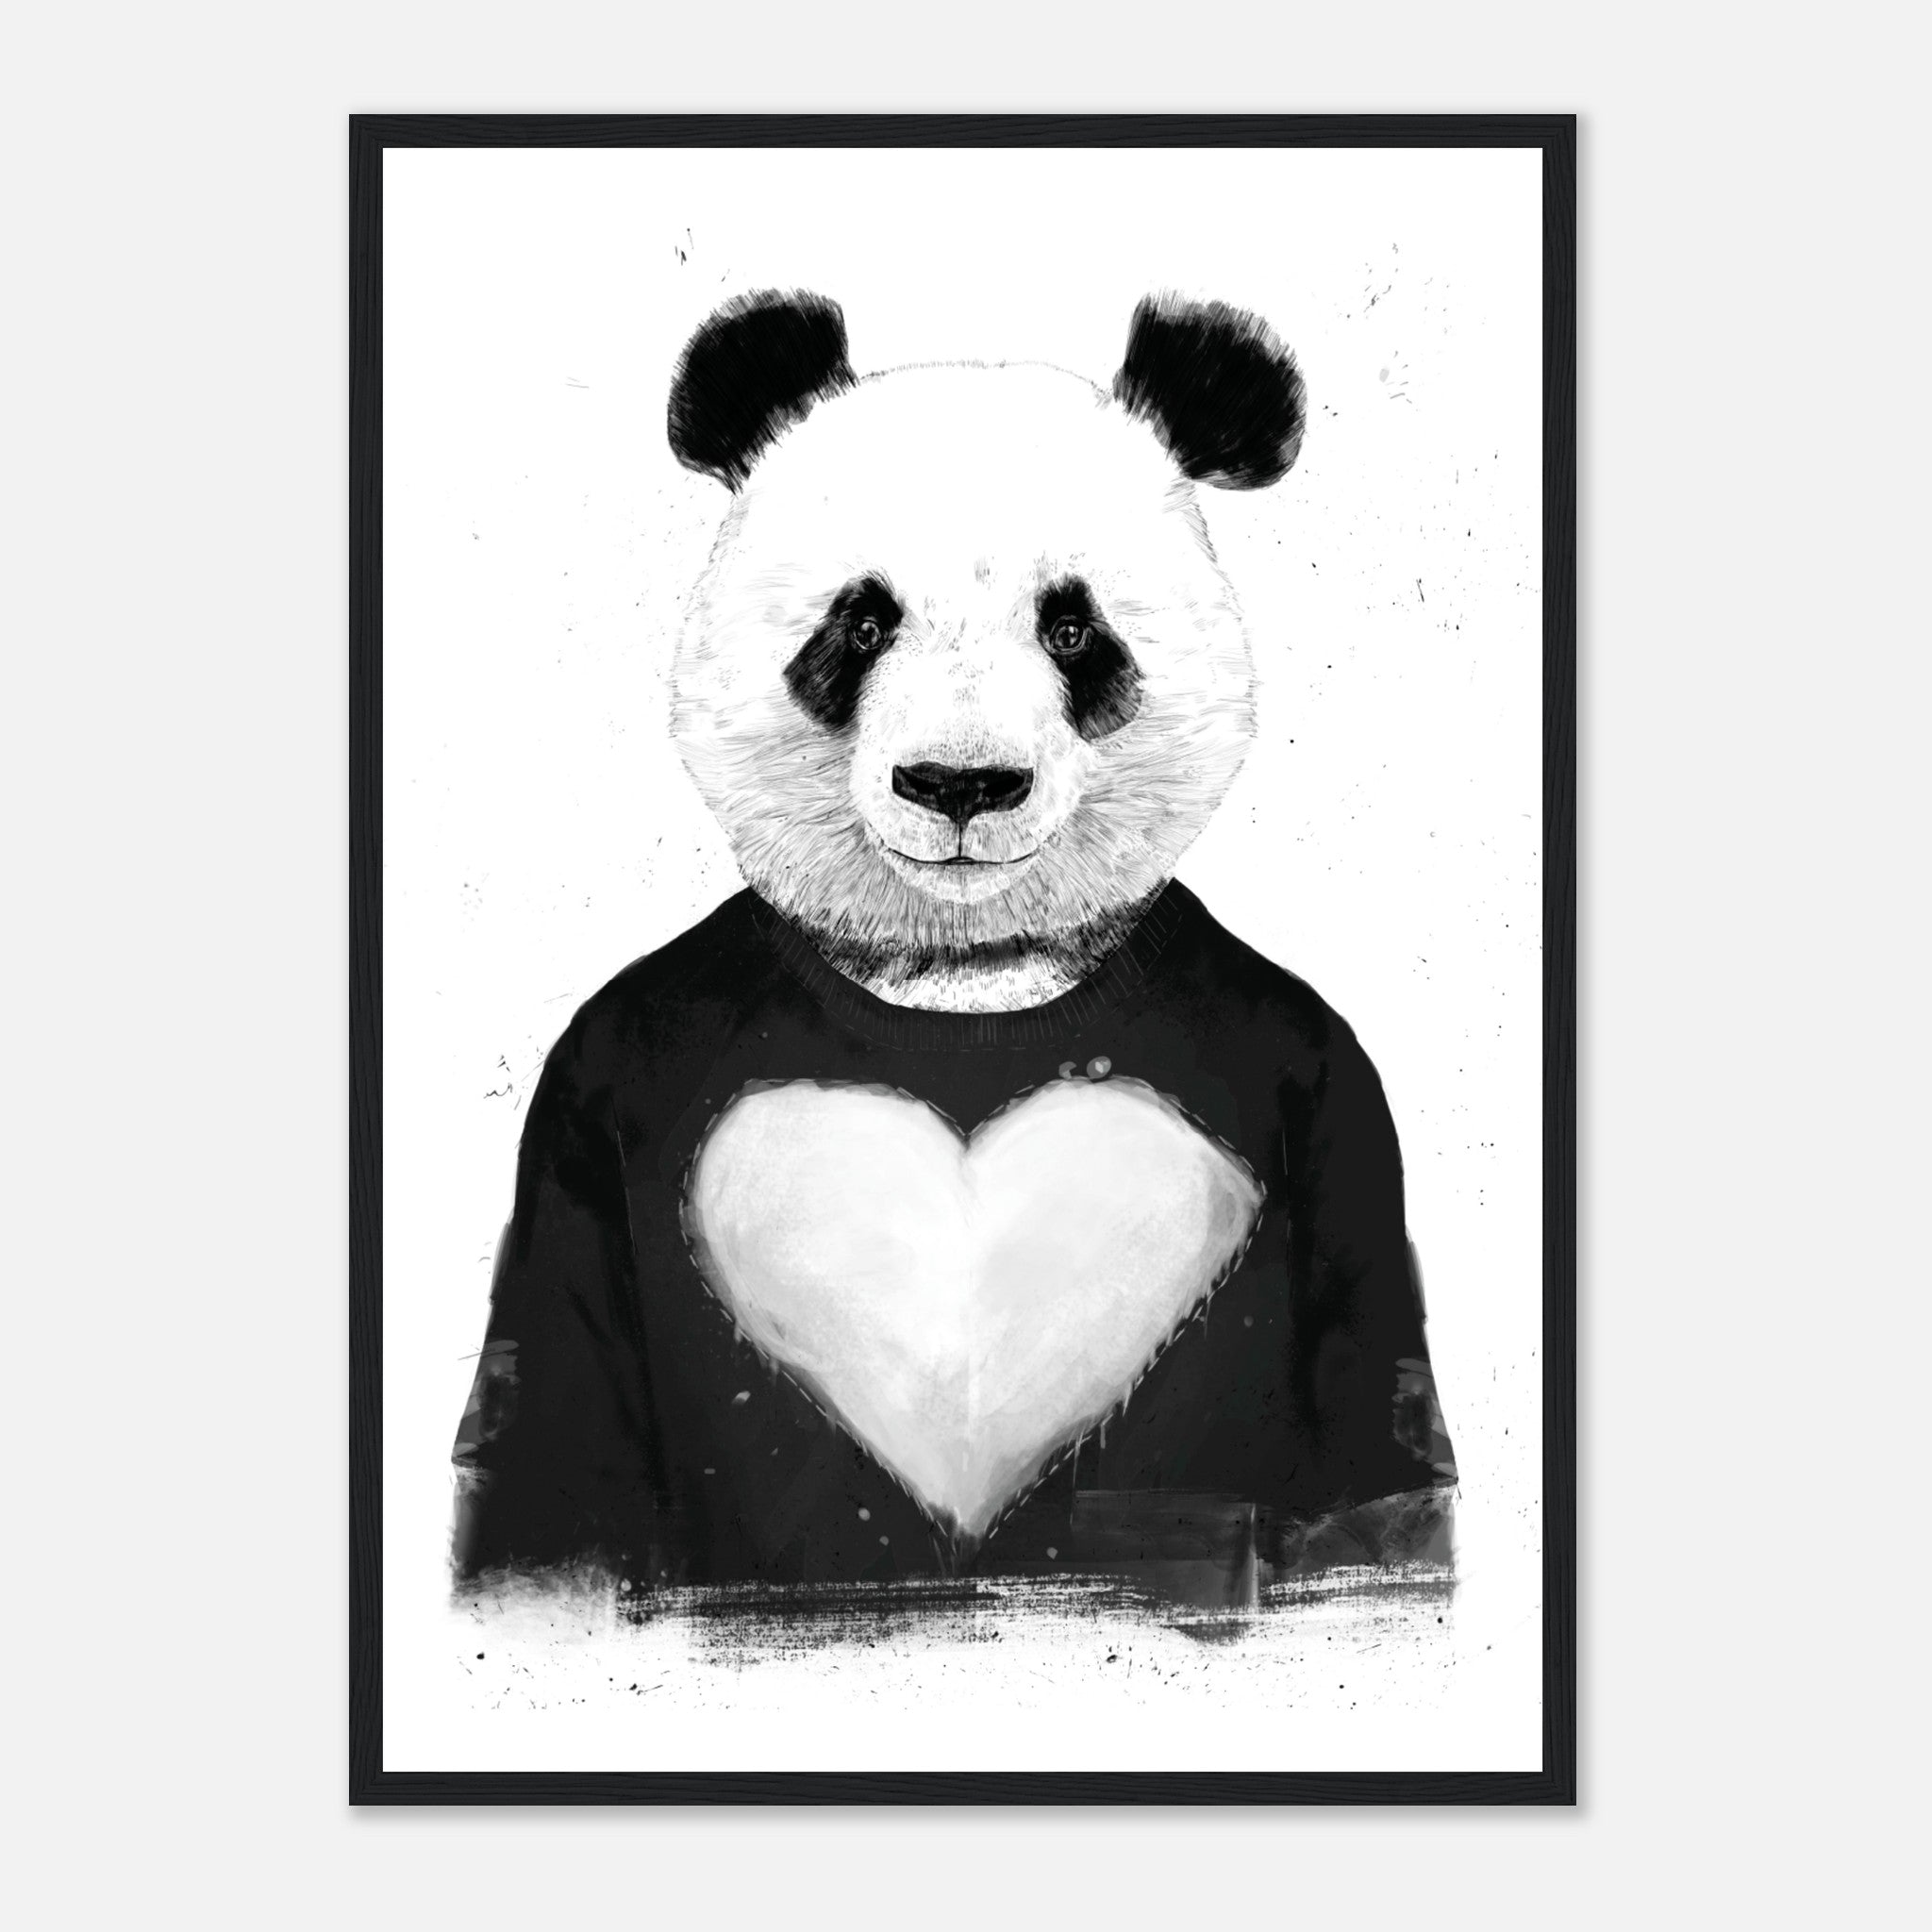 Lovely Panda Poster